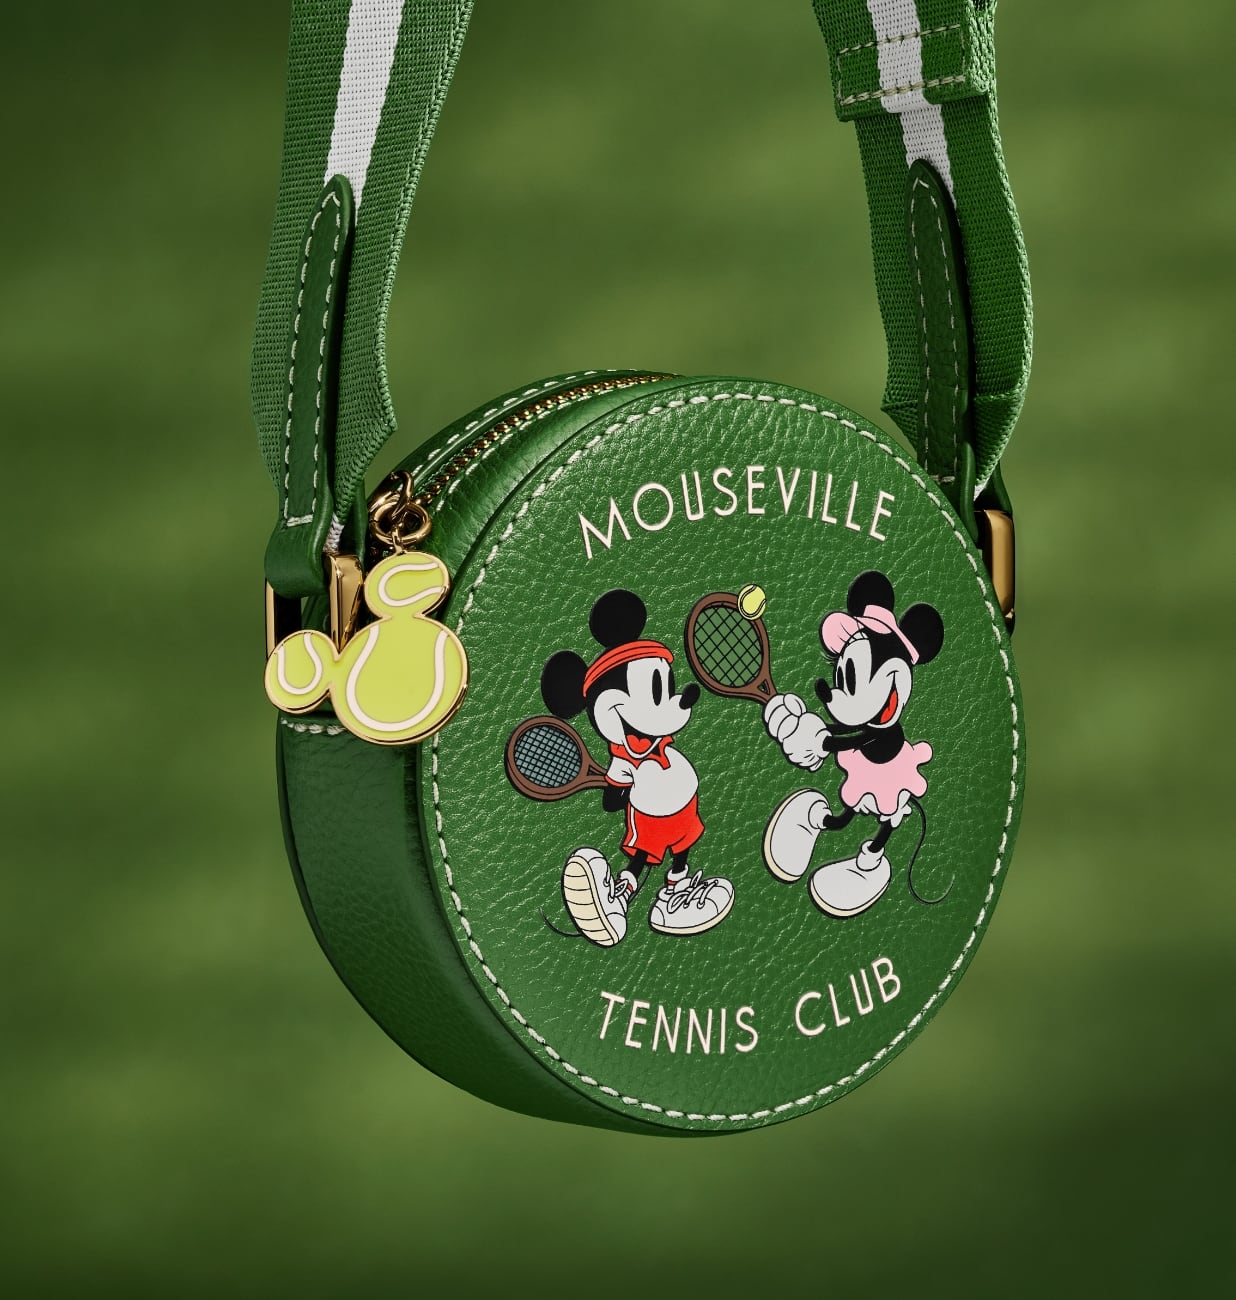 スペシャルエディションのミニクロスボディハンドバッグのクローズアップ画像。丸みのあるグリーンレザーのバッグには、ミッキーとミニーがテニスをしているスクリーンプリントのグラフィックがあしらわれています。